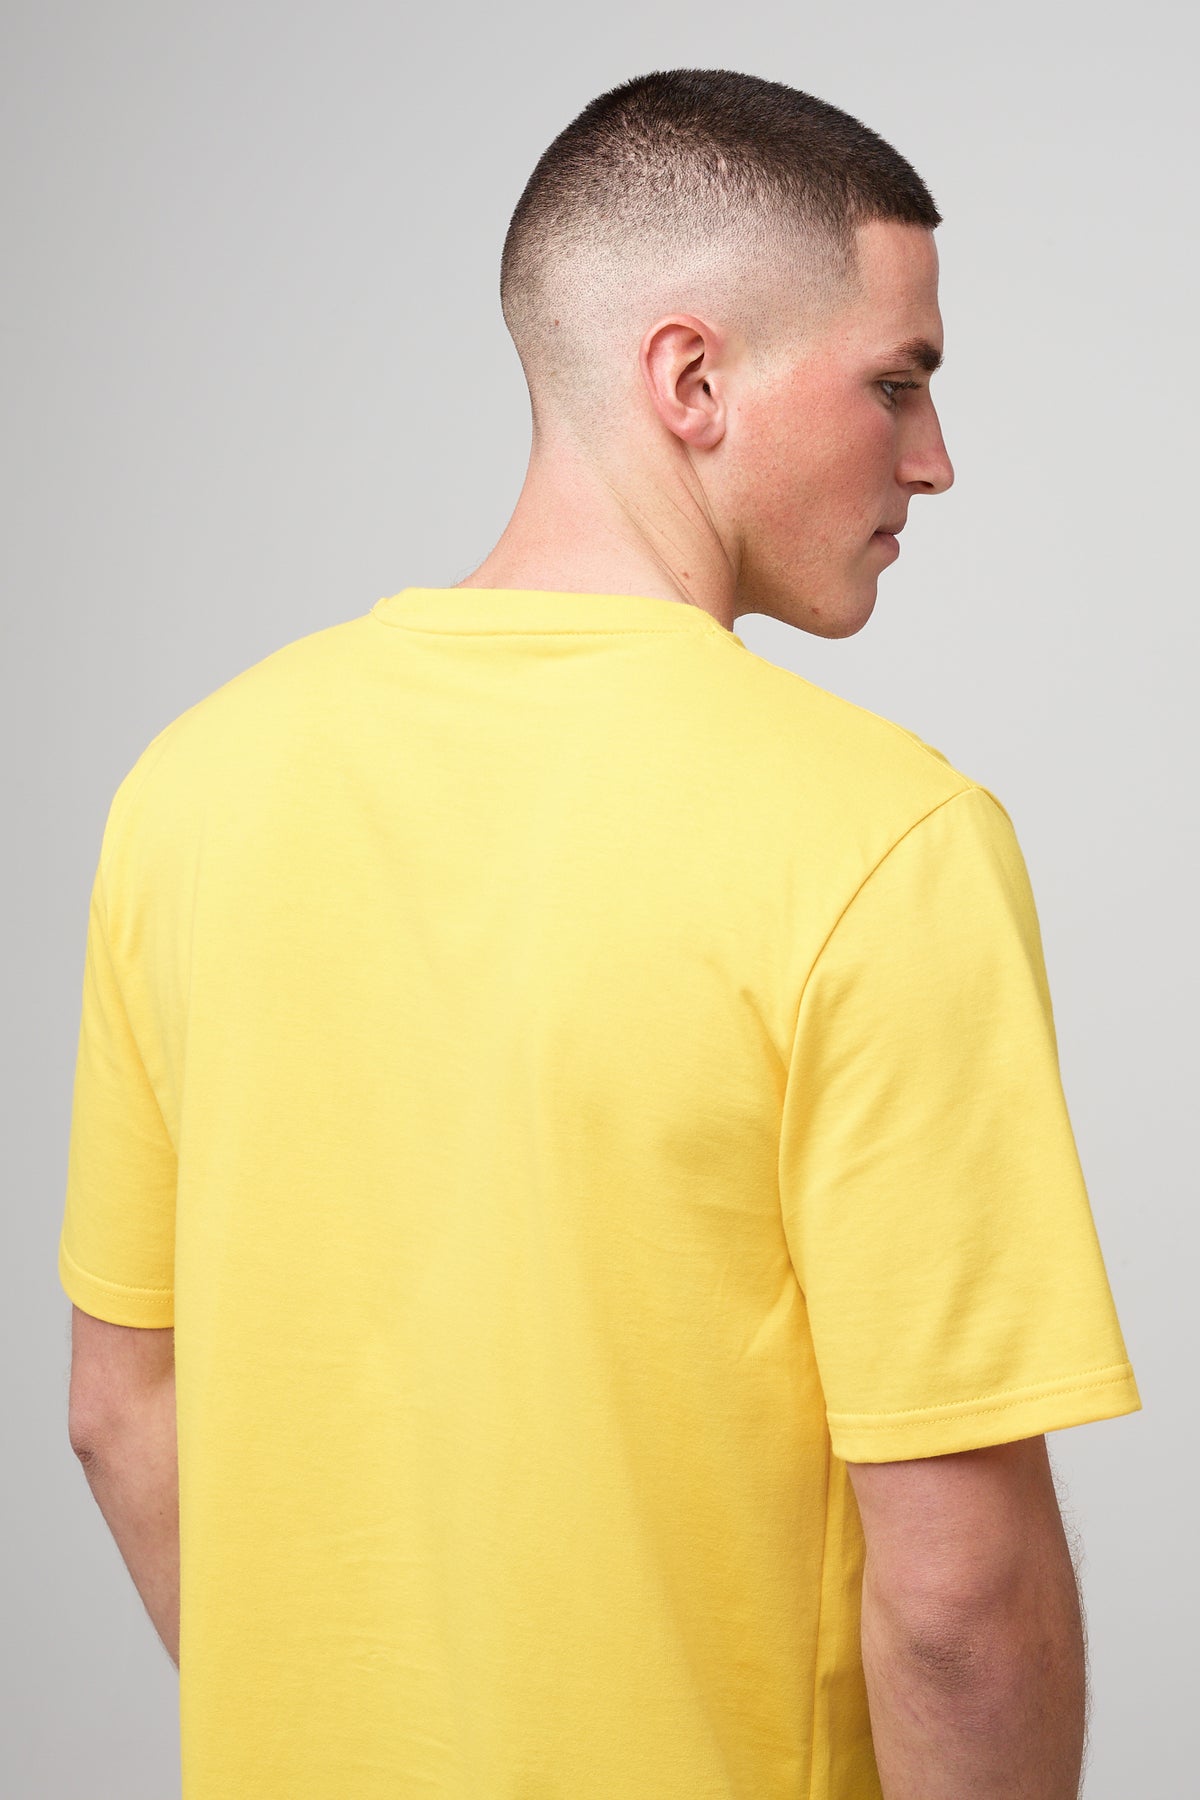 
            Brunet, white male in sunshine yellow short sleeve t-shirt, back